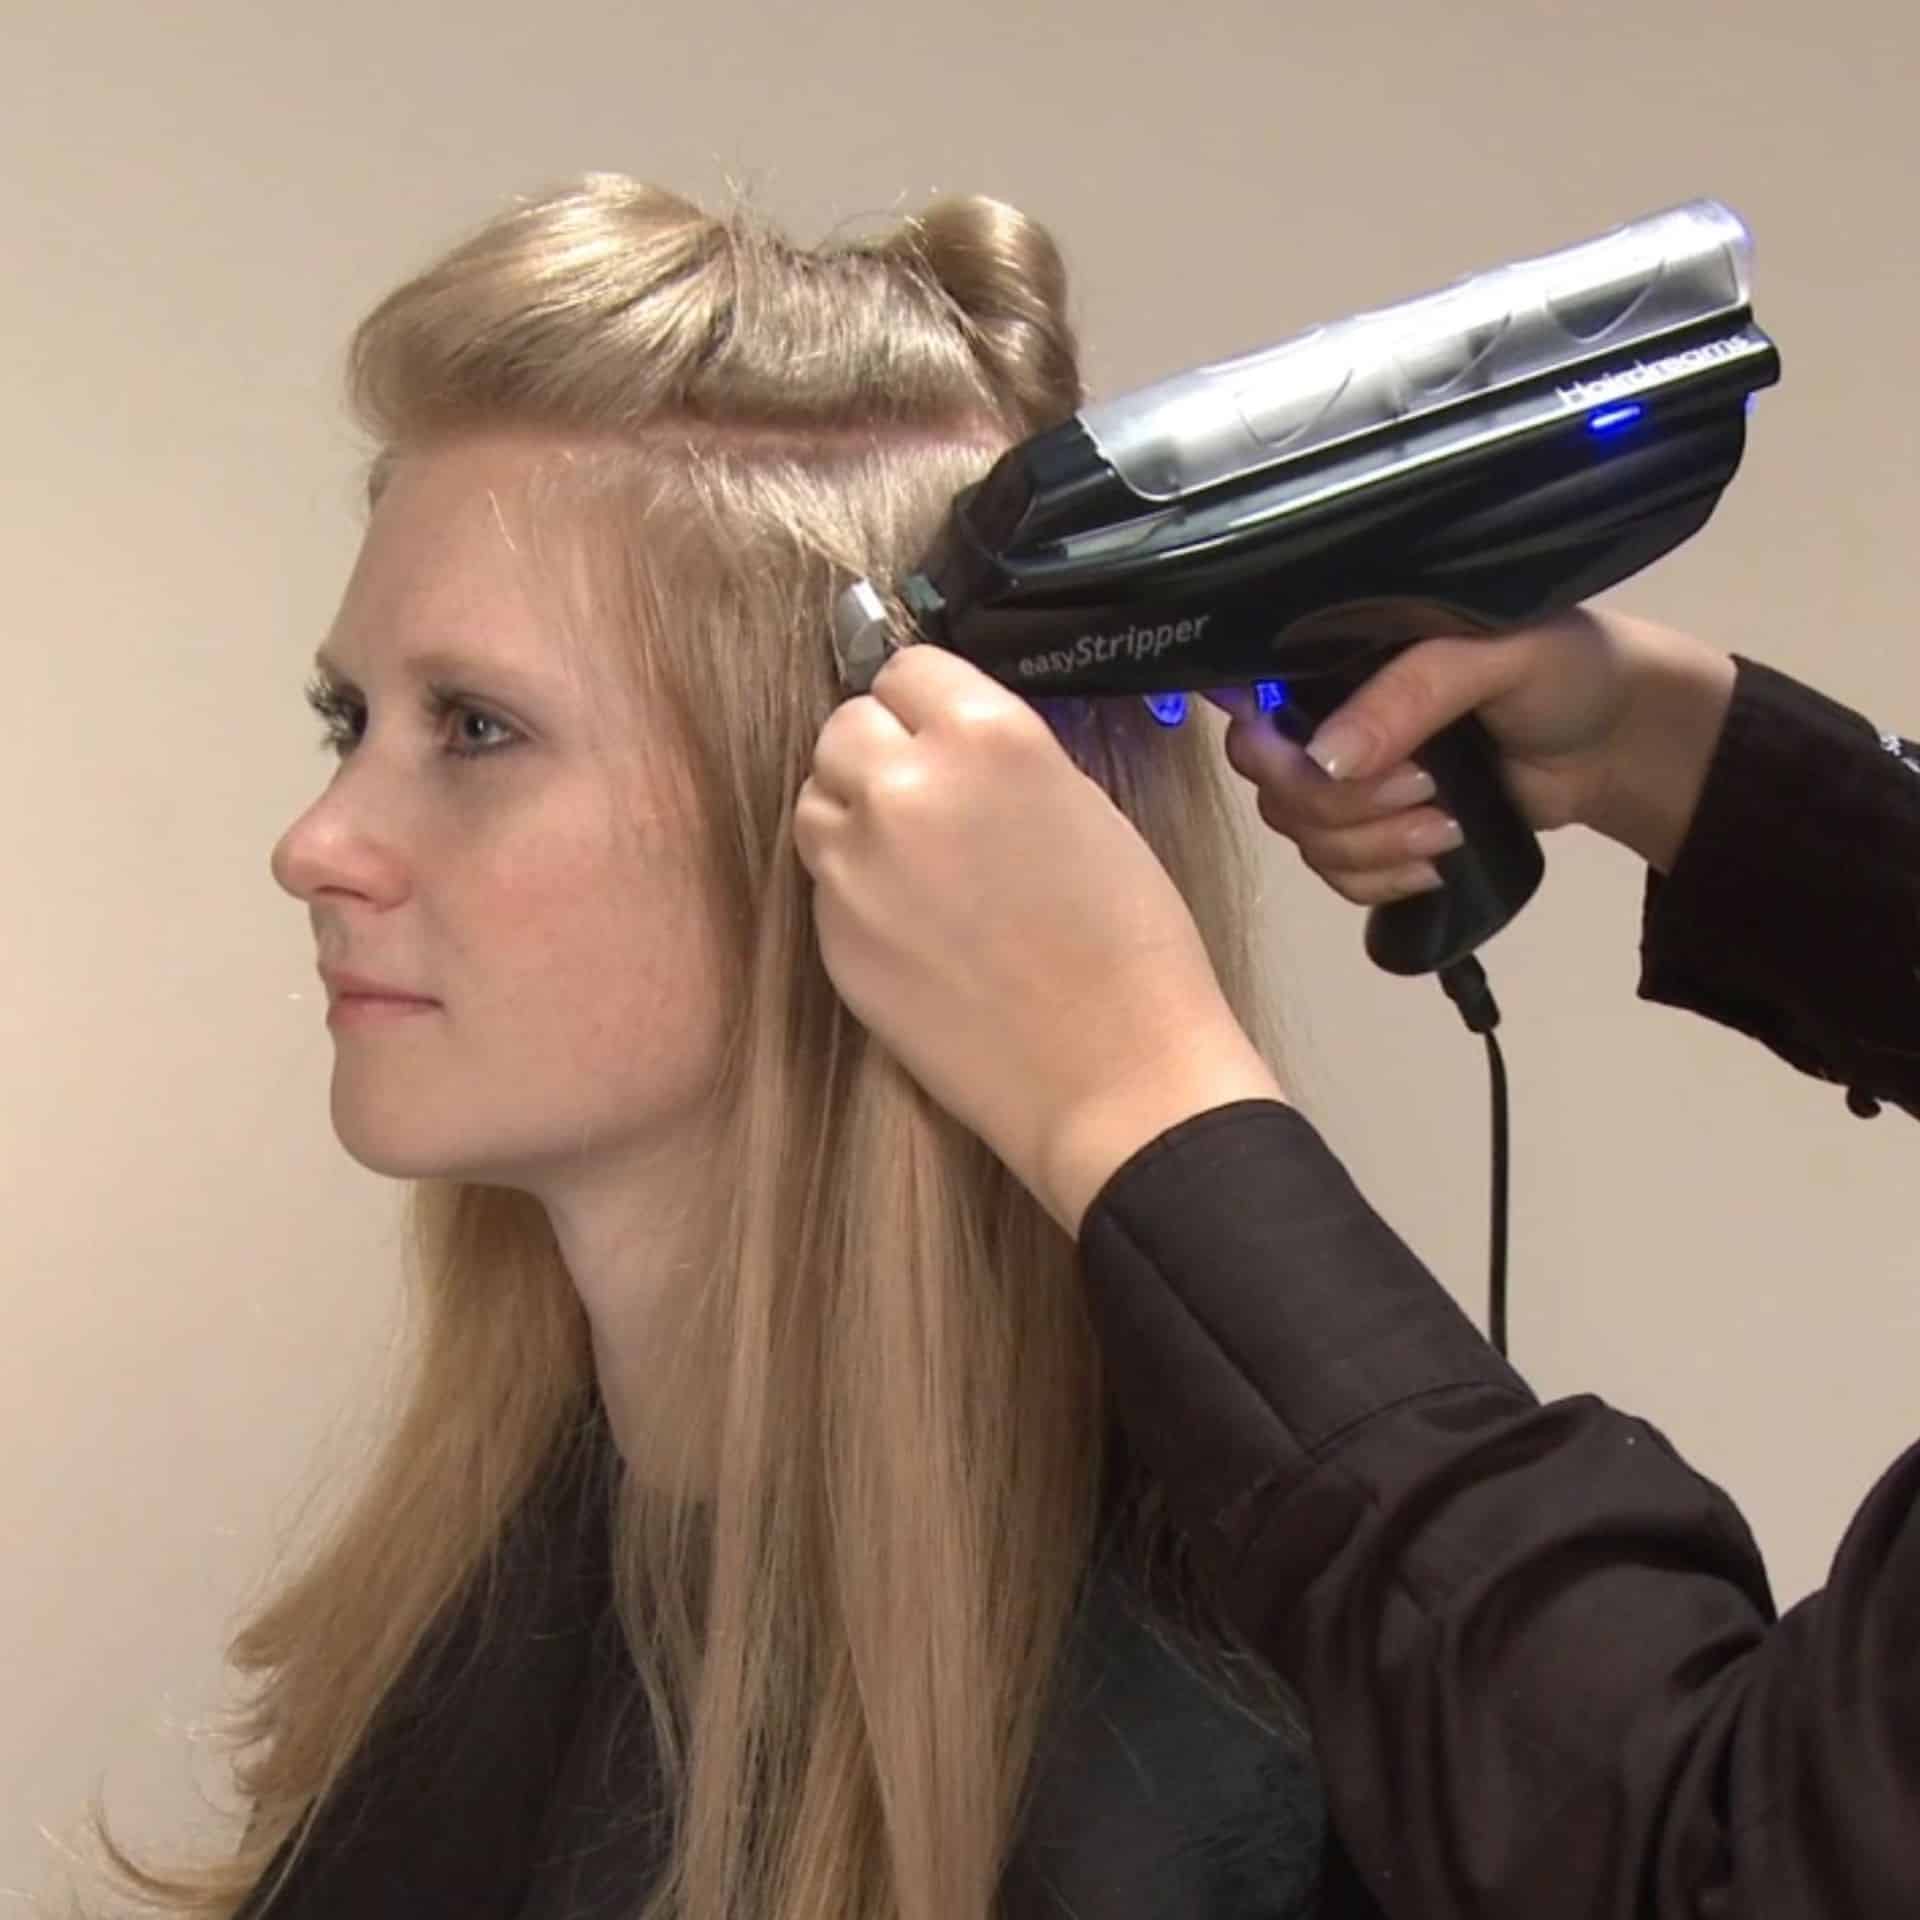 Une coiffeuse retire les extensions de bonding d'une cliente avec l'EasyStripper d'Hairdreams.